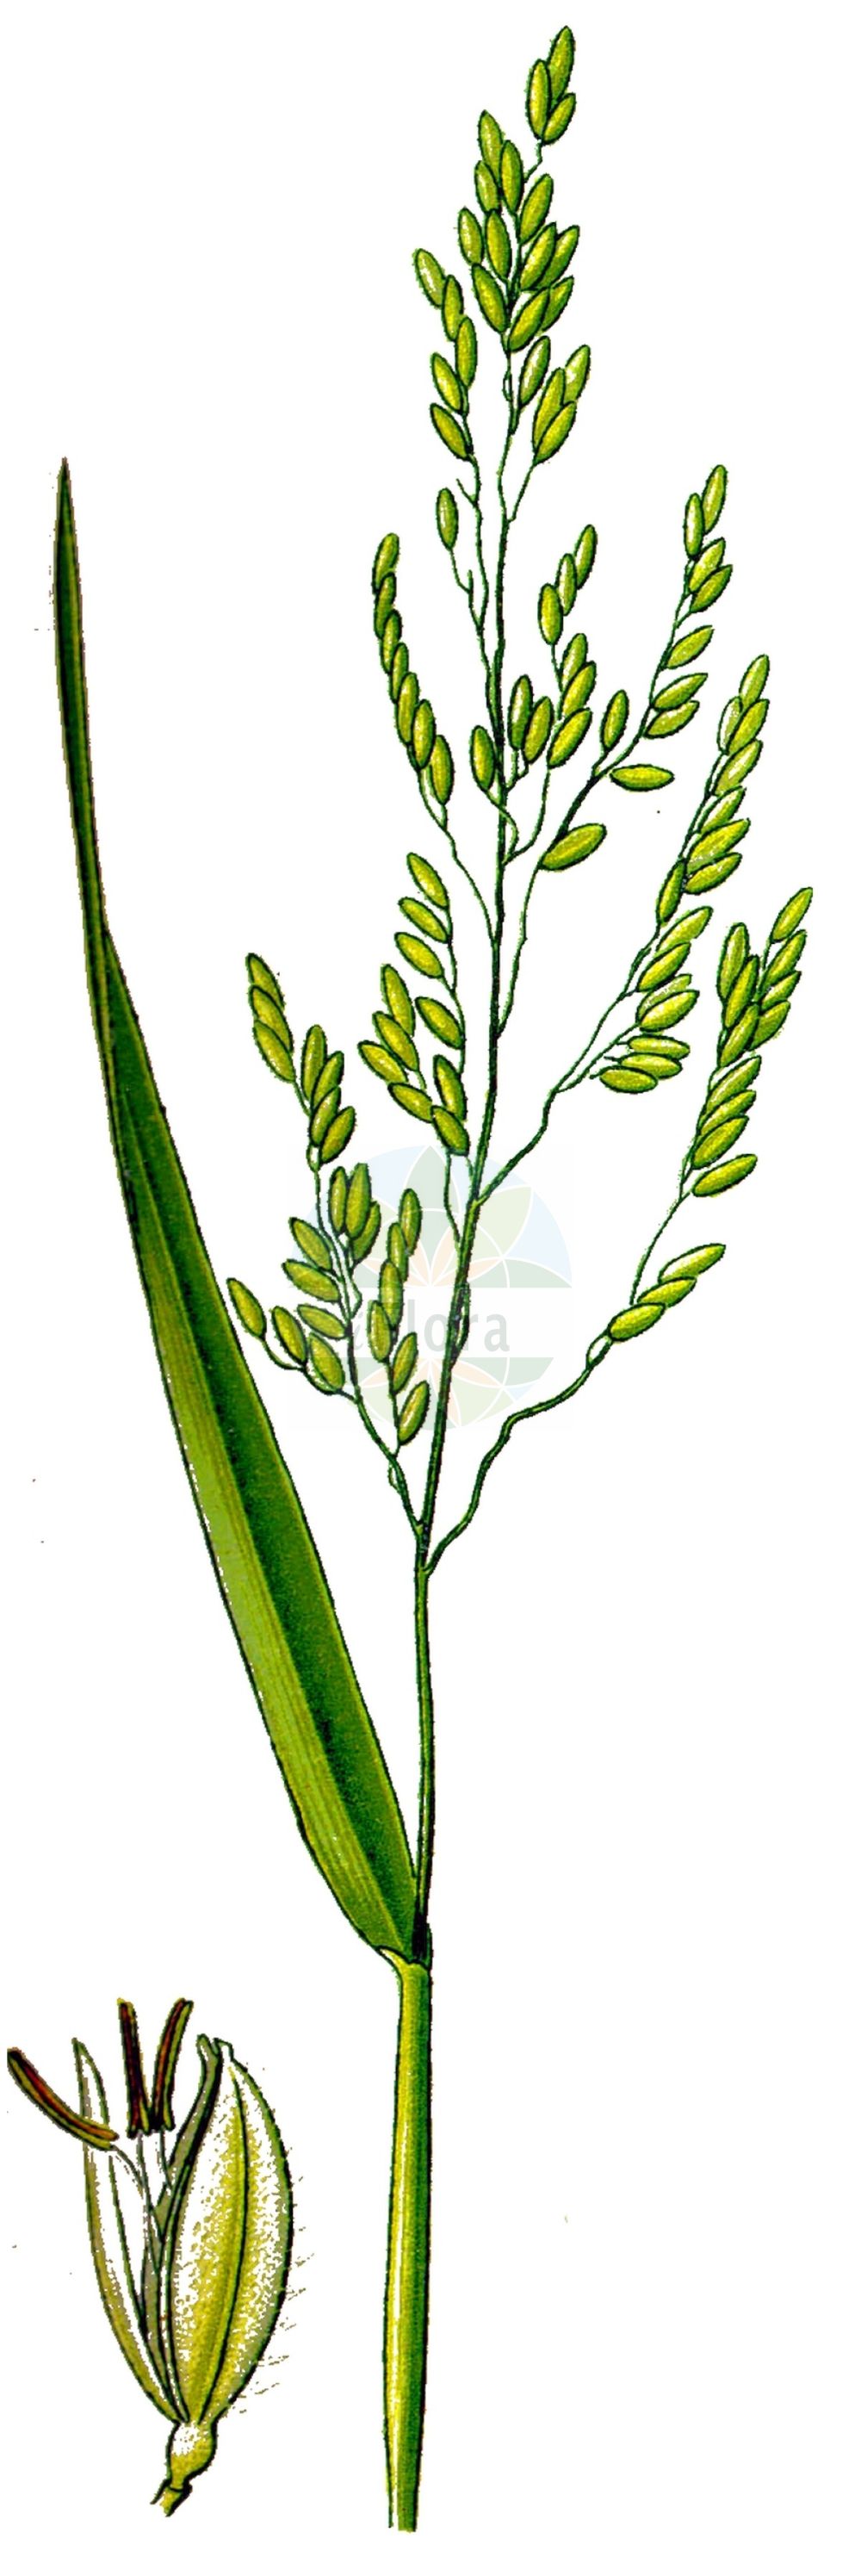 Historische Abbildung von Leersia oryzoides (Europäische Reisquecke - Cut-grass). Das Bild zeigt Blatt, Bluete, Frucht und Same. ---- Historical Drawing of Leersia oryzoides (Europäische Reisquecke - Cut-grass). The image is showing leaf, flower, fruit and seed.(Leersia oryzoides,Europäische Reisquecke,Cut-grass,Homalocenchrus oryzoides,Leersia oryzoides,Oryza clandestina,Oryza oryzoides,Phalaris oryzoides,Europaeische Reisquecke,Reisquecke,Wilder Reis,Cut-grass,Rice Grass,Marsh-grass,Rice Cutgrass,Leersia,Reisquecke,Cutgrass,Poaceae,Süßgräser,Grass family,Blatt,Bluete,Frucht,Same,leaf,flower,fruit,seed,Thomé (1885))